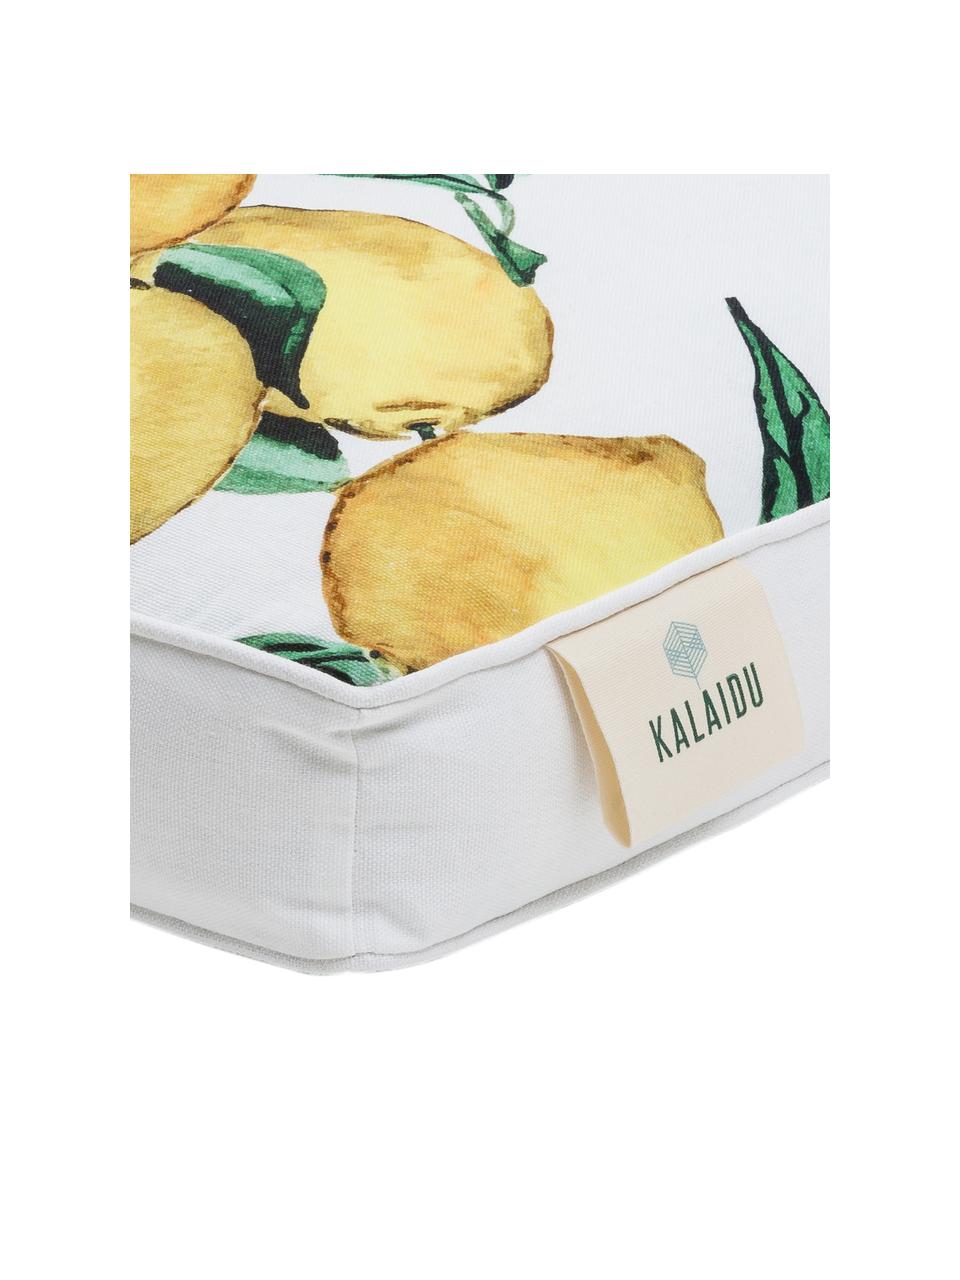 Hohes Sitzkissen Citrus aus Baumwolle, Bezug: 100% Baumwolle, Gelb, Grün, Weiss, B 40 x L 40 cm